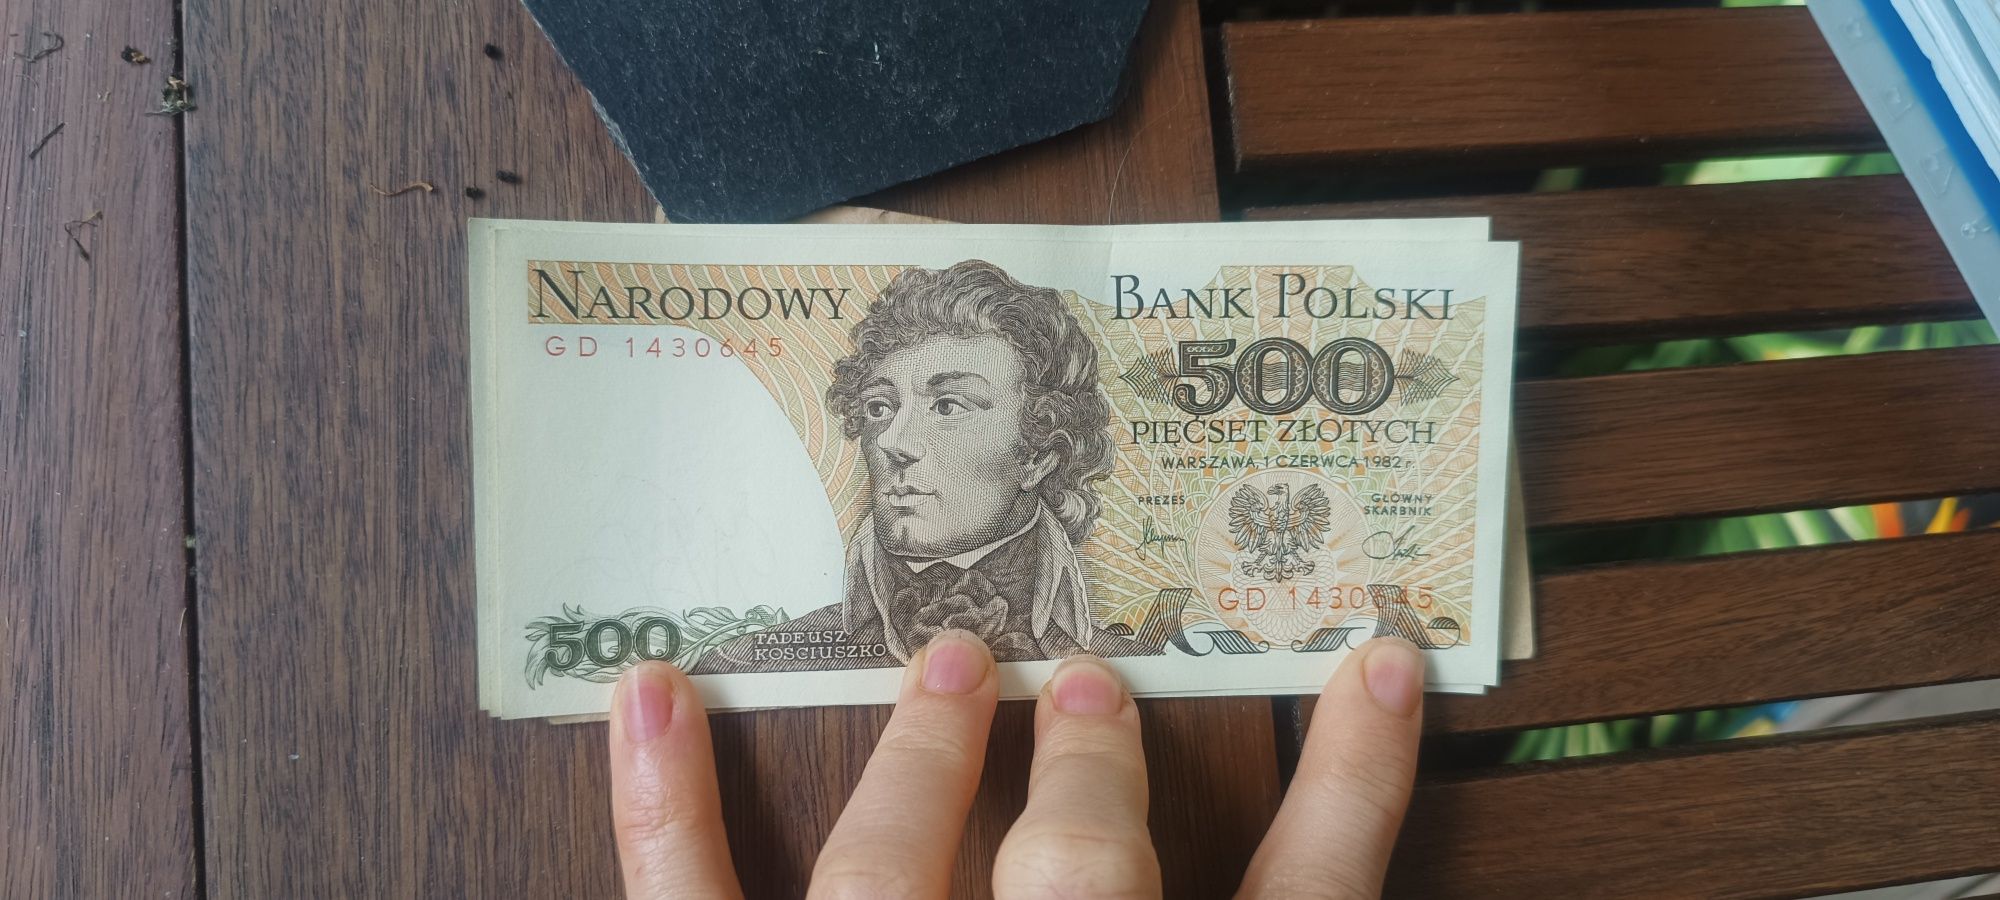 Banknot 500 zl z 1982 r.